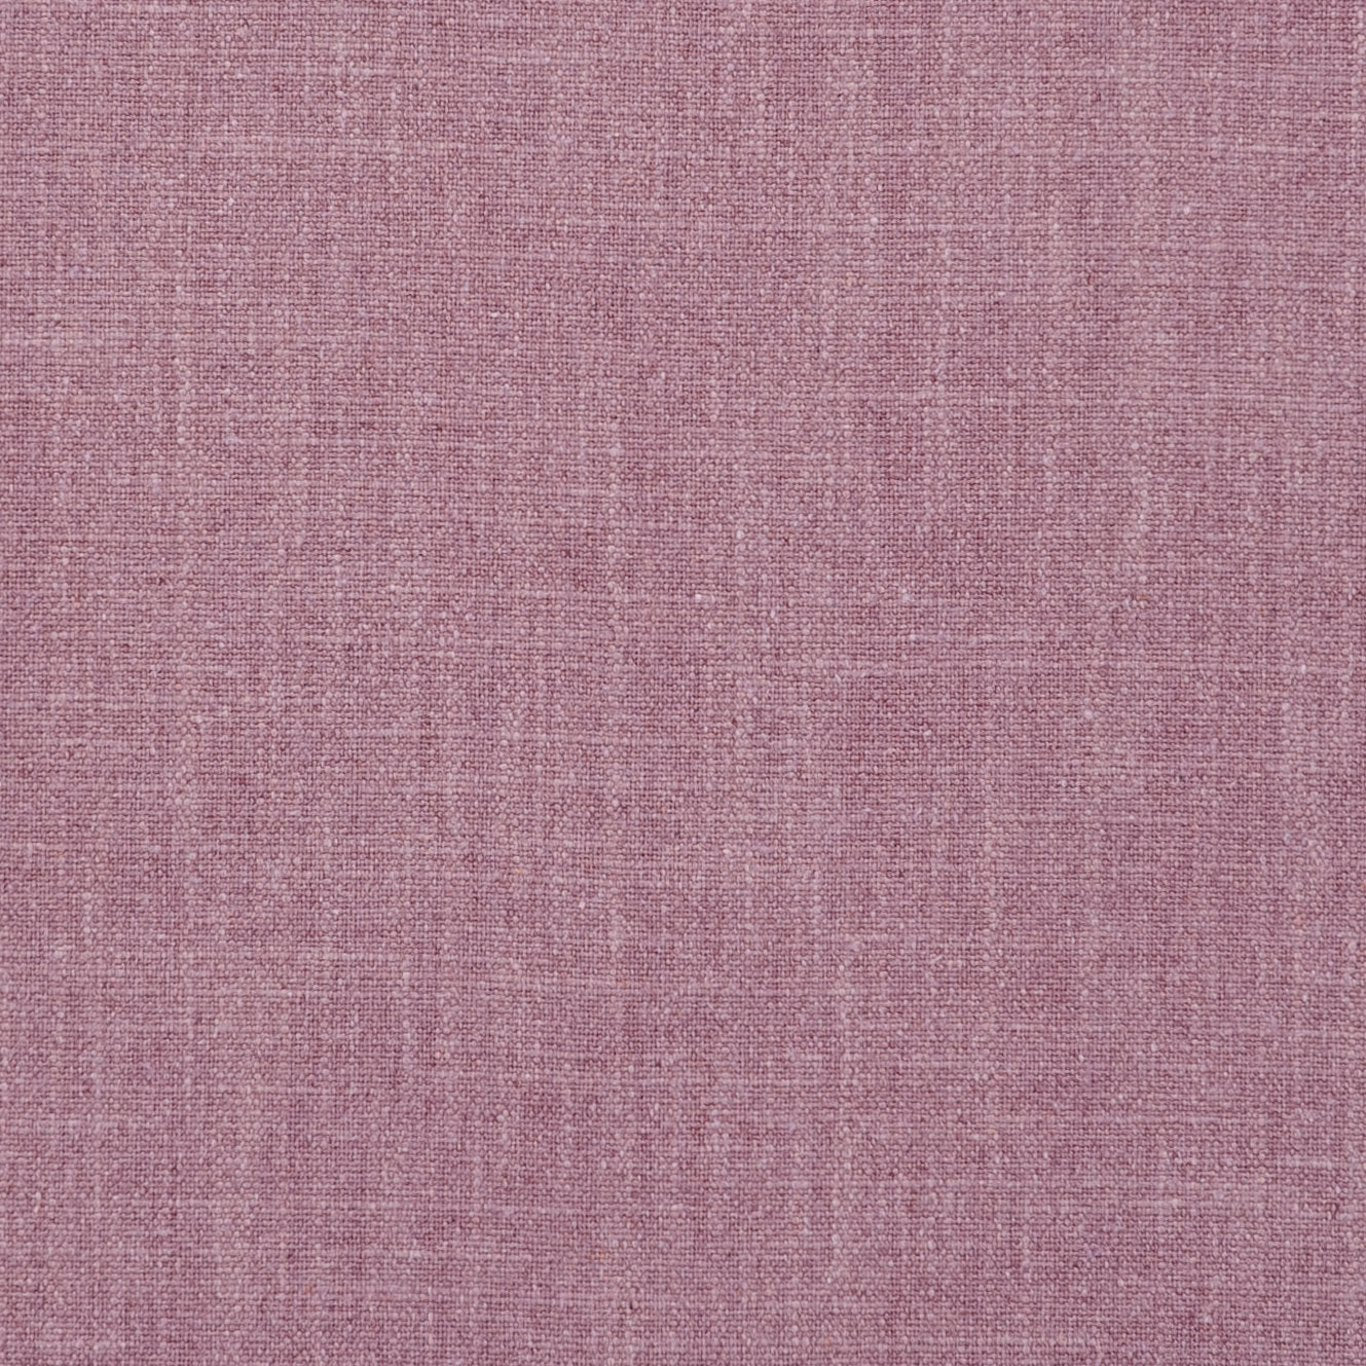 Easton Fabric by Clarke & Clarke - F0736/07 - Orchid